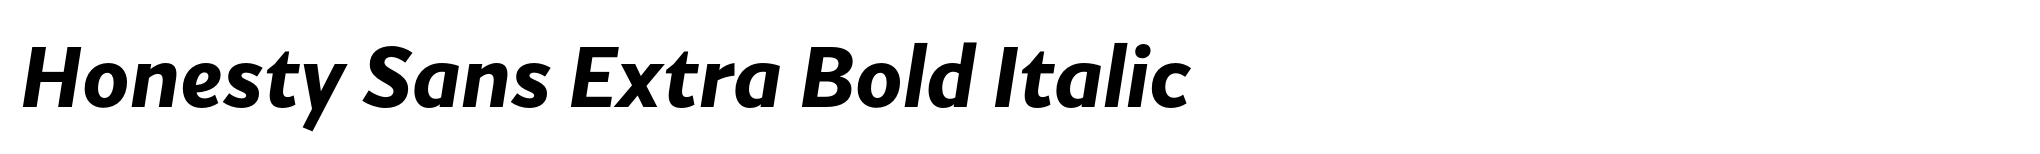 Honesty Sans Extra Bold Italic image